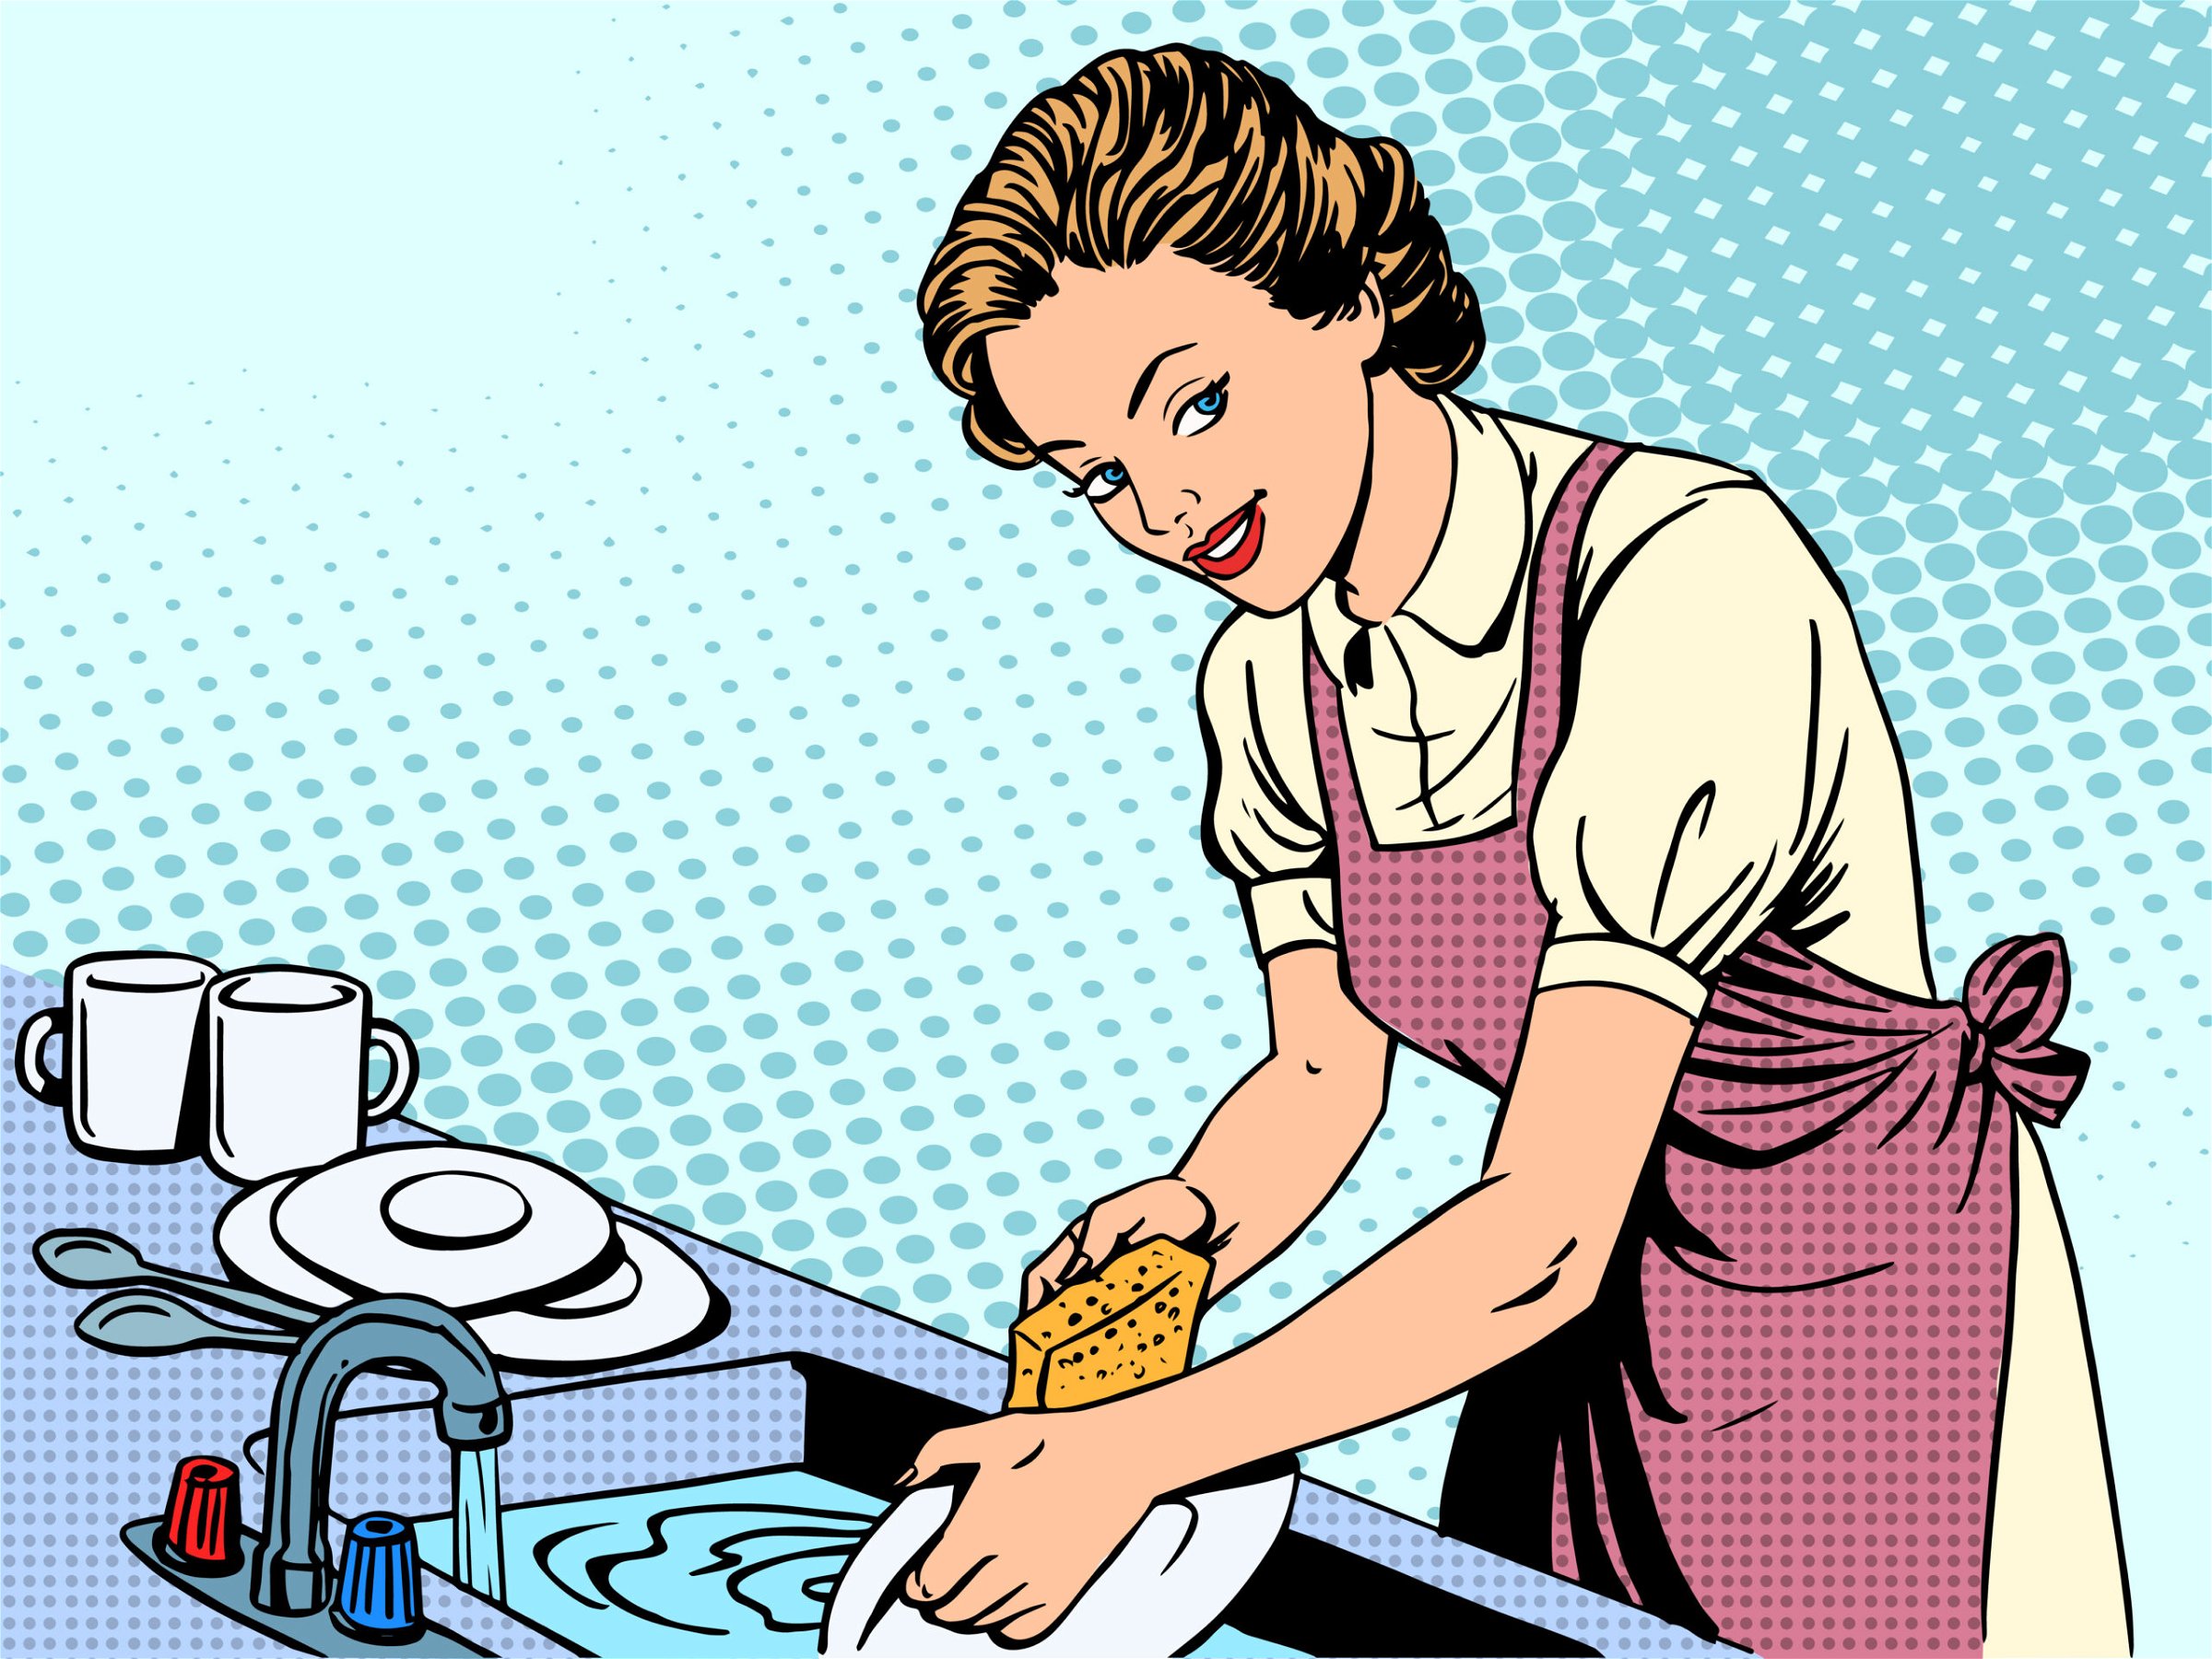 Trump fordert Frauen auf, Geschirrspüler zu kaufen